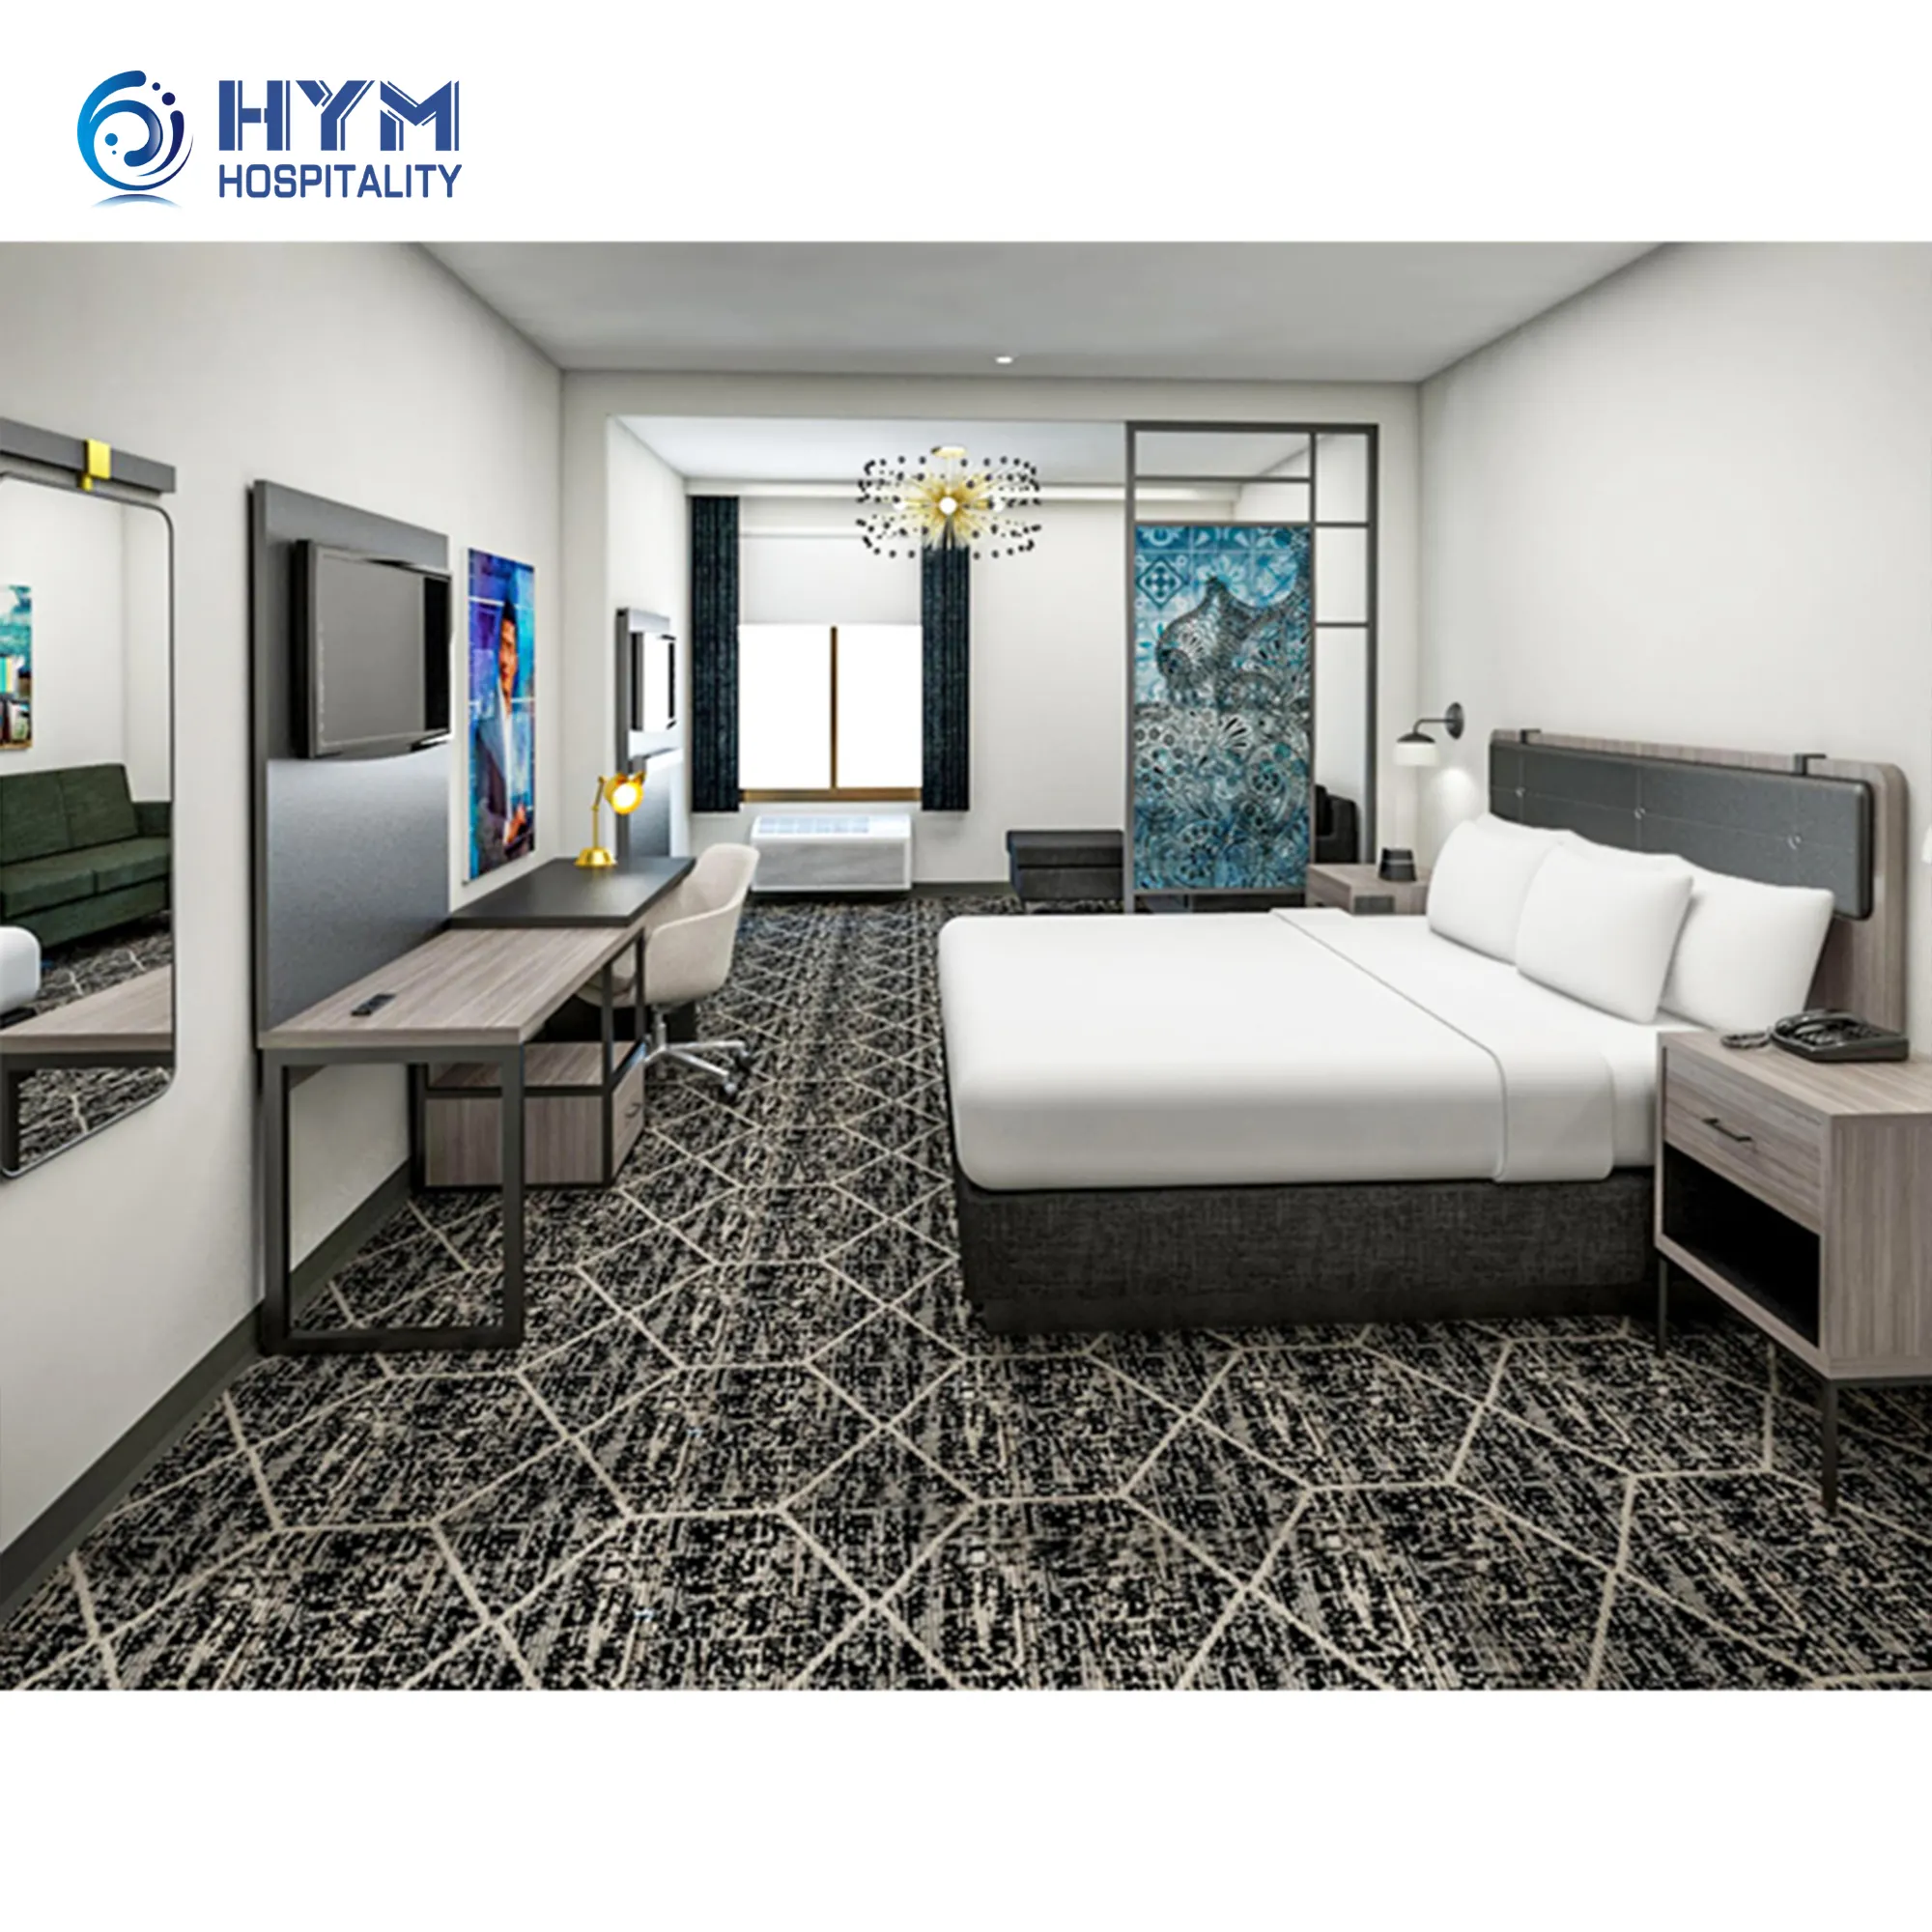 new design La quinta Cosmo Luxe by wyndham la quinta Wyndham hotel furniture